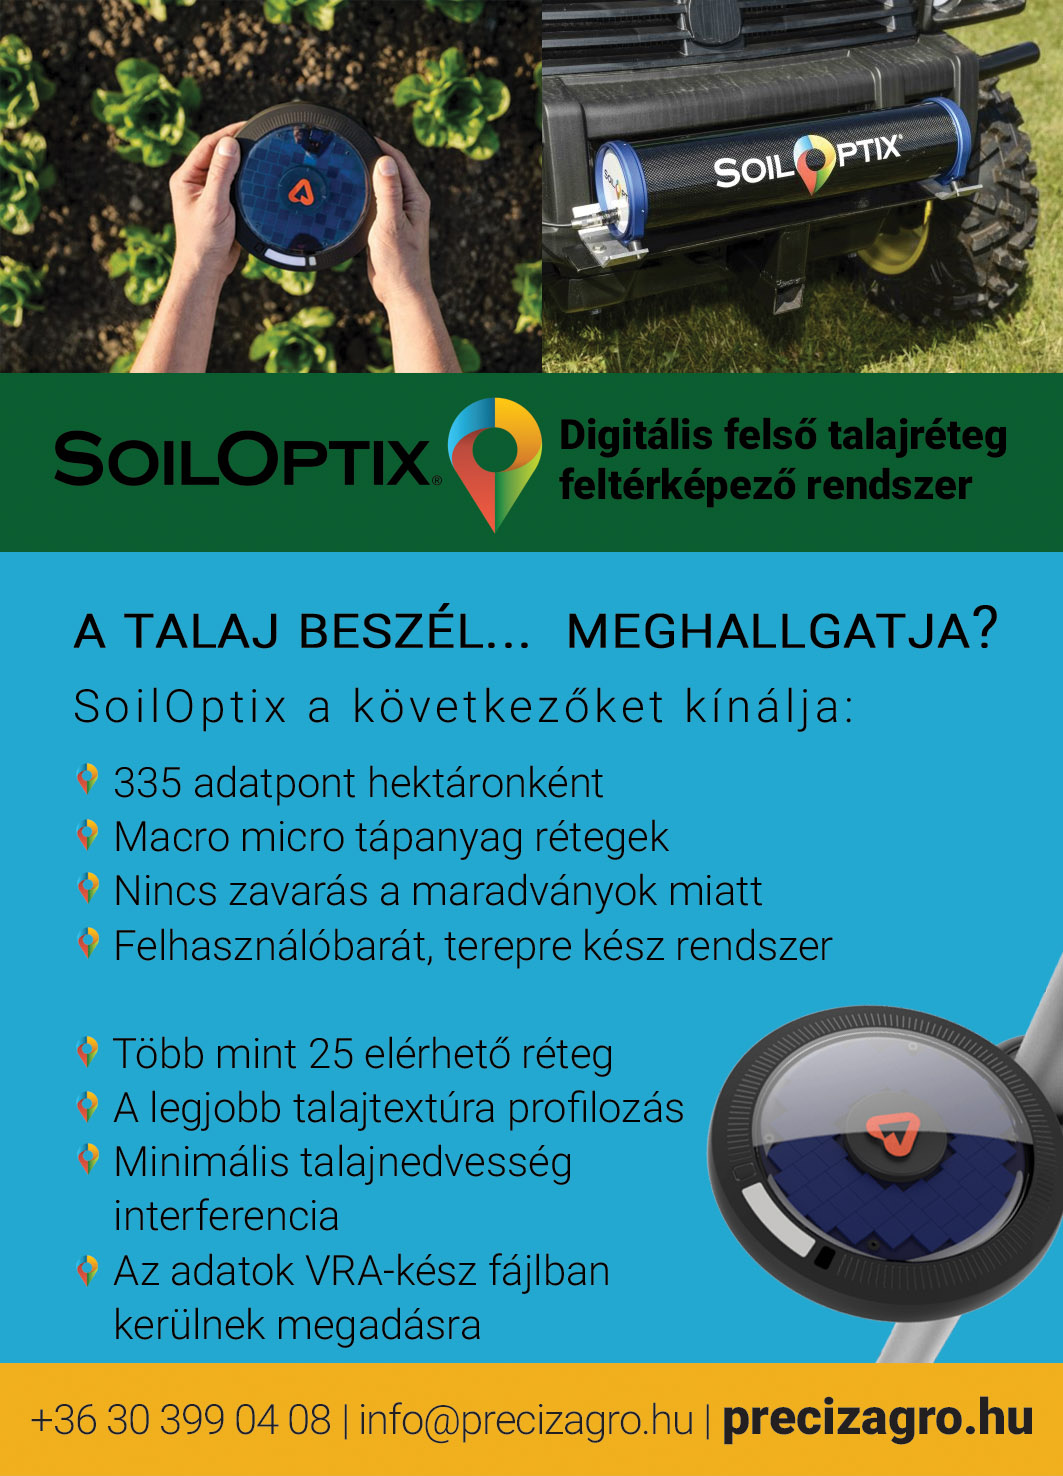 SoilOptix - Digitális felső talajréteg feltérképező rendszer